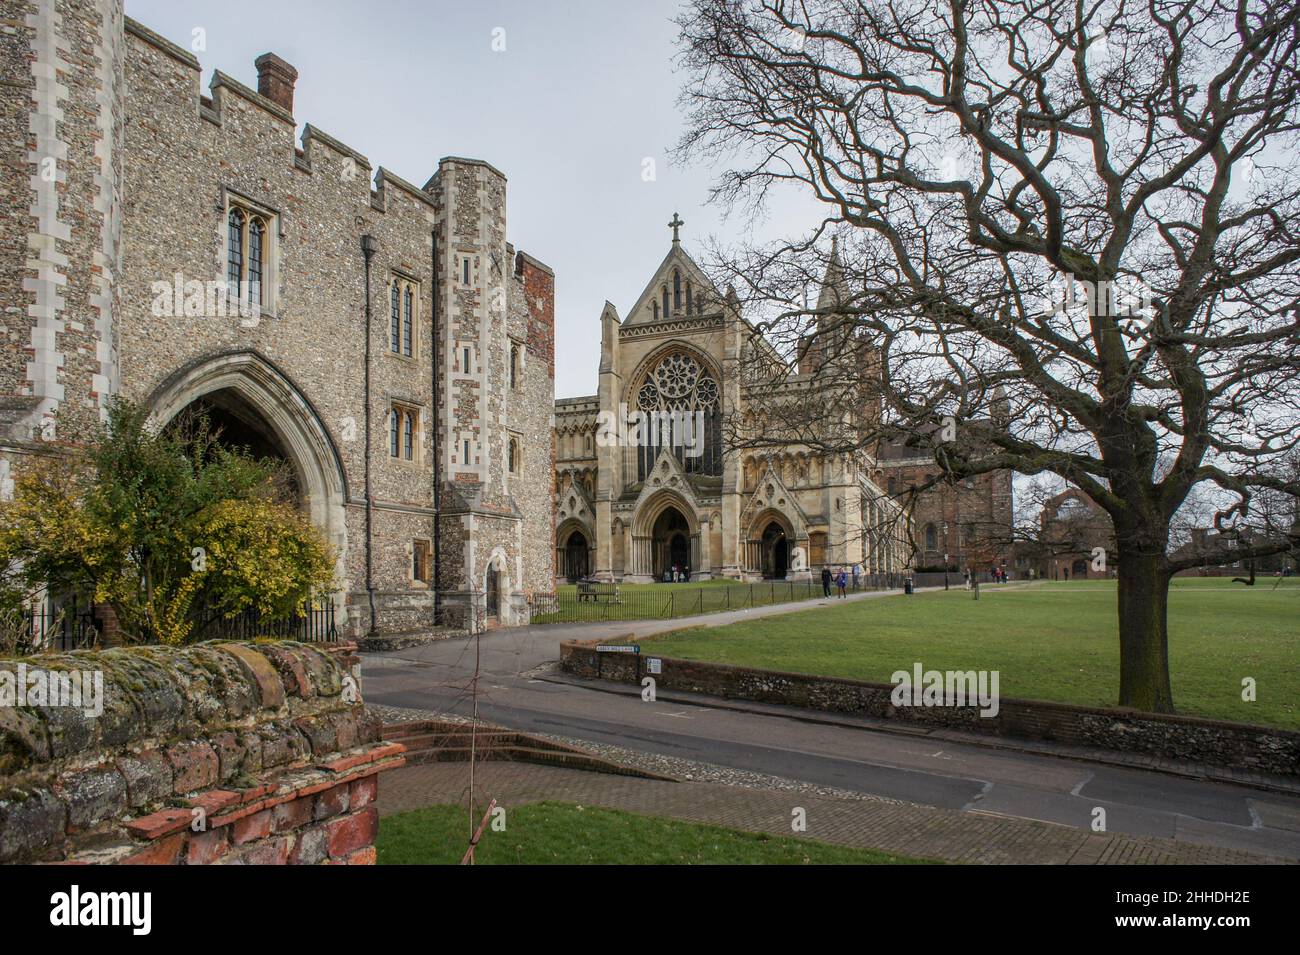 Cathédrale St Albans, St Albans, Hertfordshire, Royaume-Uni ; Abbey Gatehouse en premier plan Banque D'Images